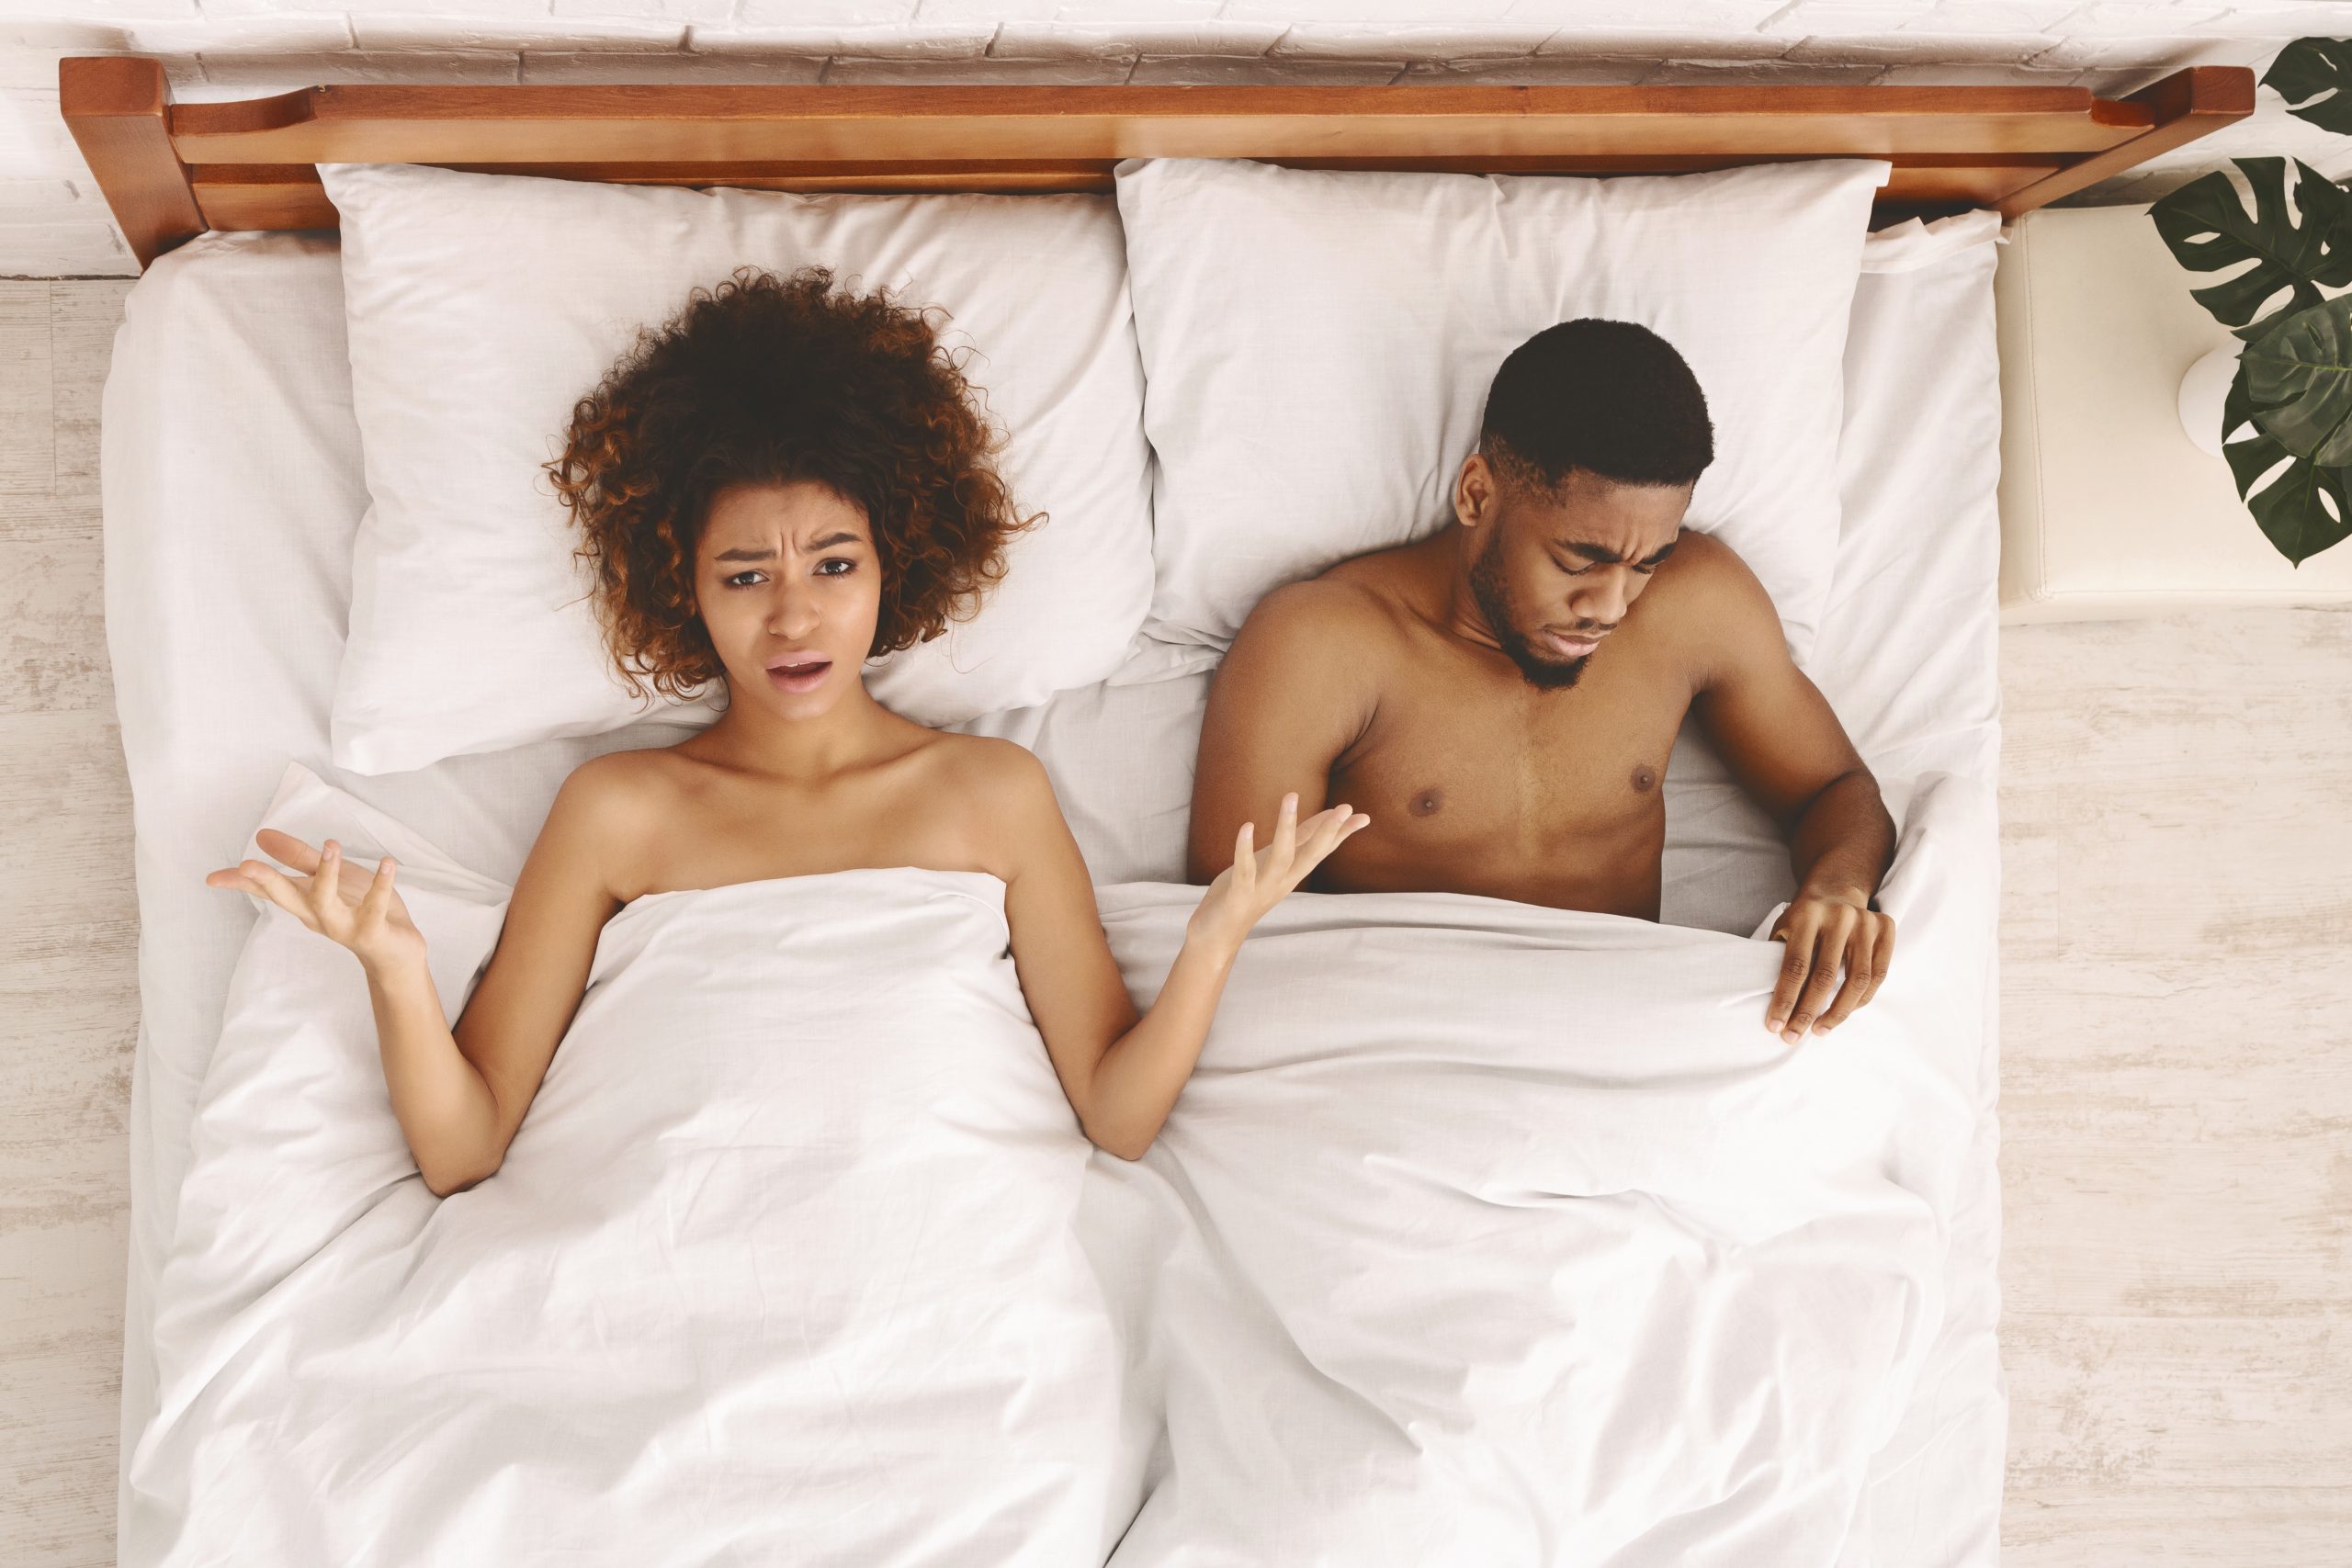 Сексуальная проблема. Разочарованная черная неудовлетворенная женщина лежит в постели, грустный мужчина смотрит под одеяло, вид сверху